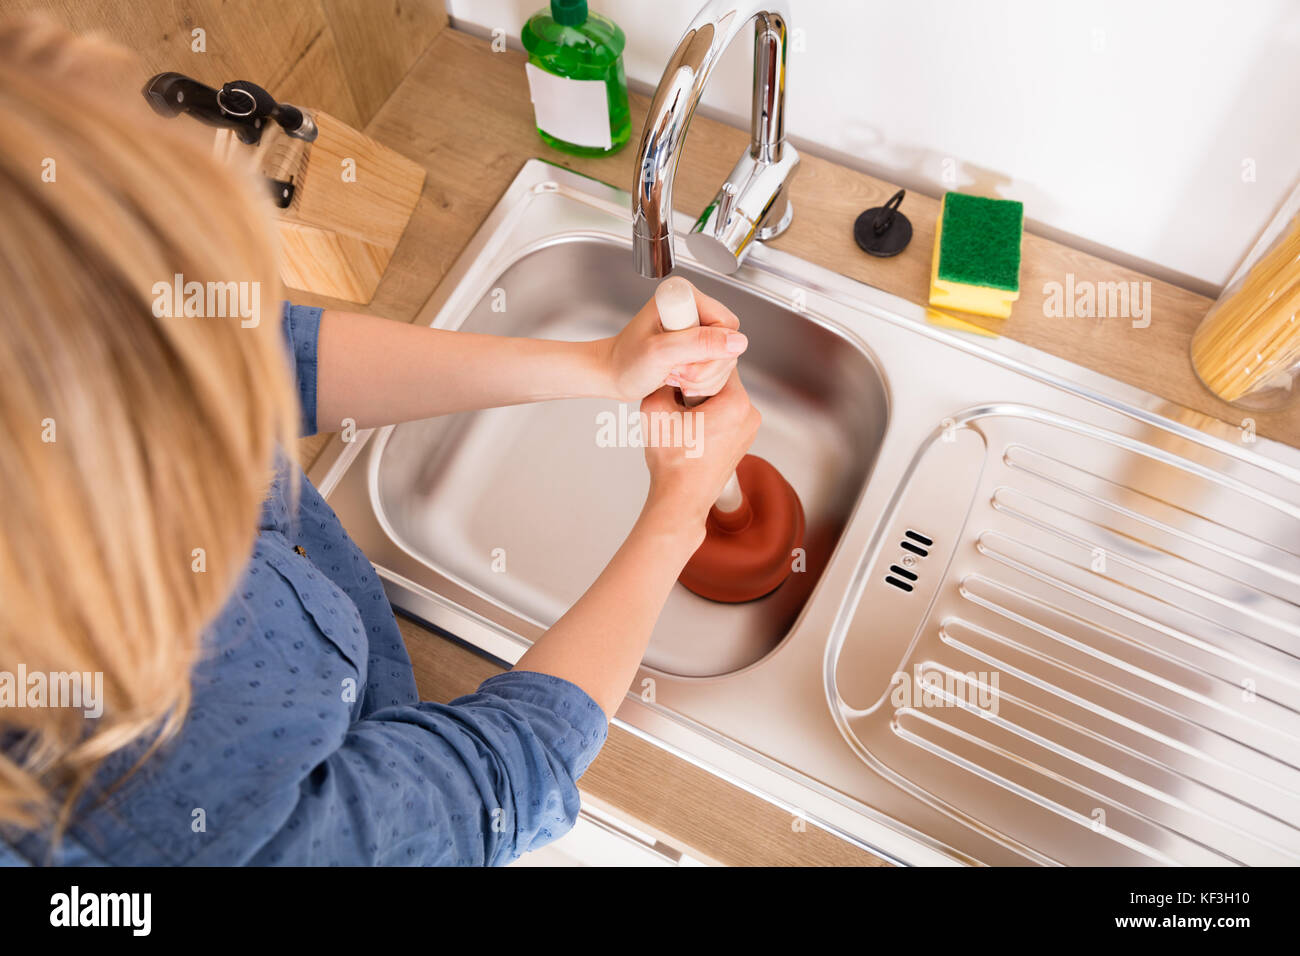 Elevato angolo di visione della donna con pistone bloccato nel lavello da cucina per rimuovere eventuali otturazioni svuotare Foto Stock